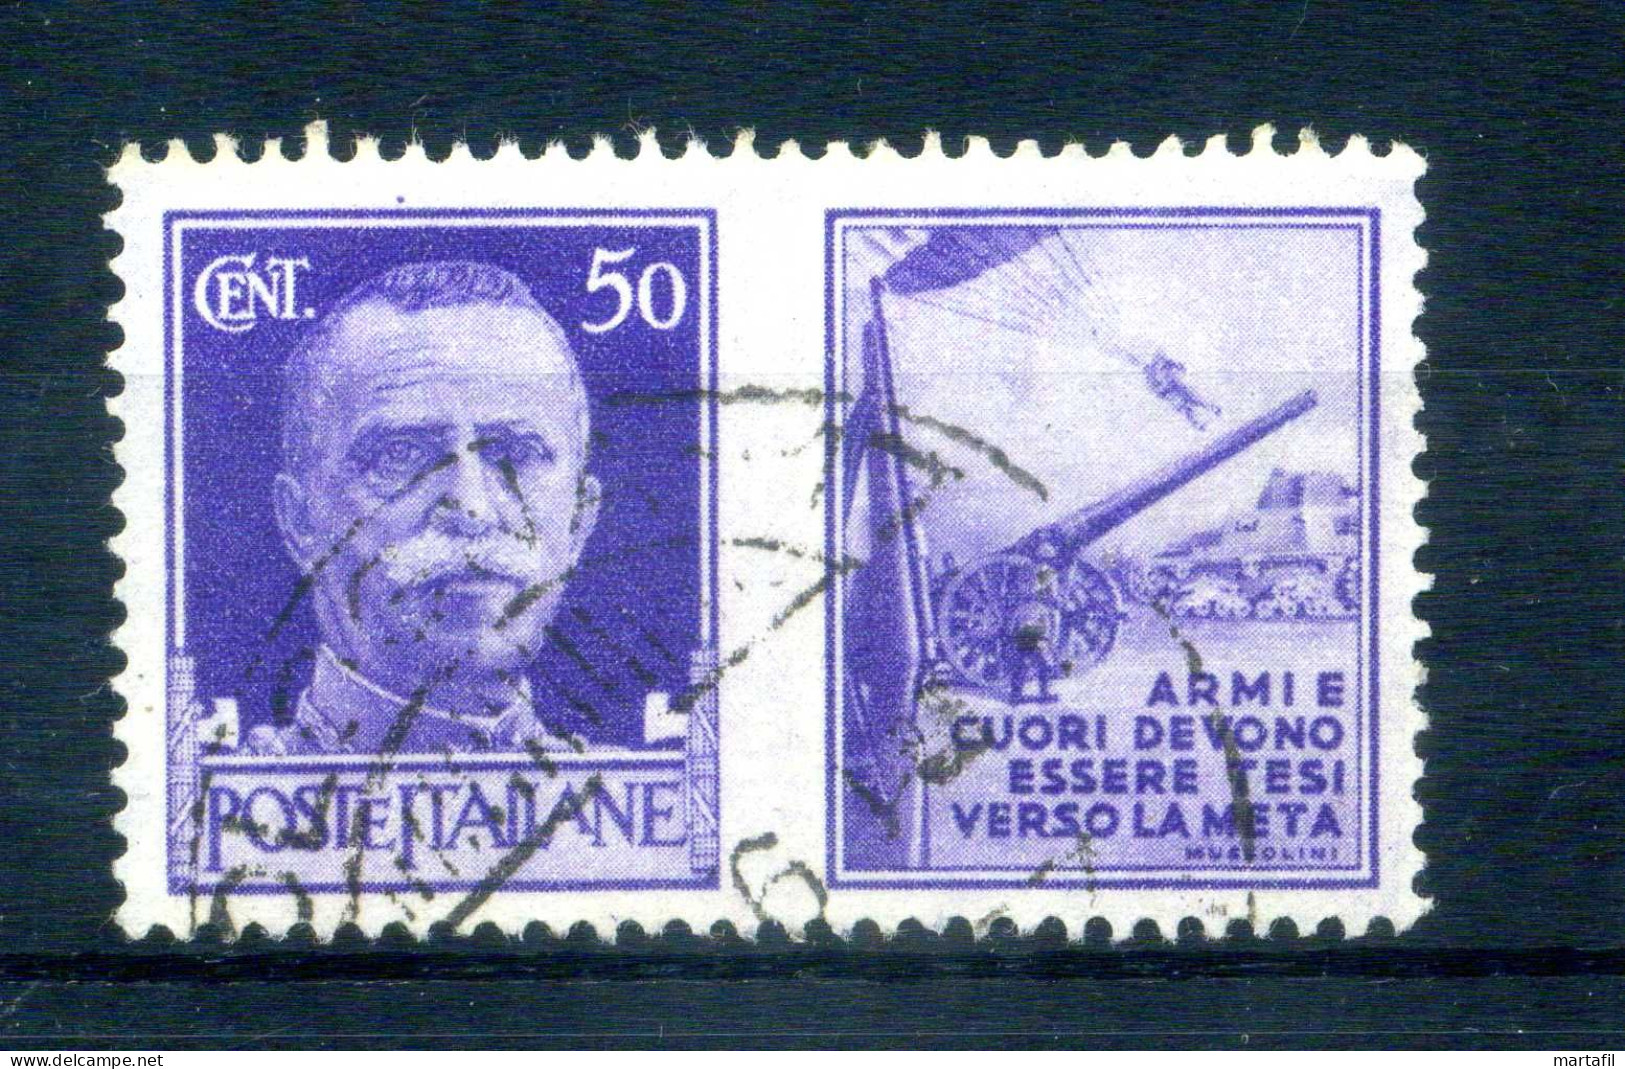 1942 REGNO Propaganda Di Guerra N.10 USATO 50 Centesimi Violetto ESERCITO - Propagande De Guerre